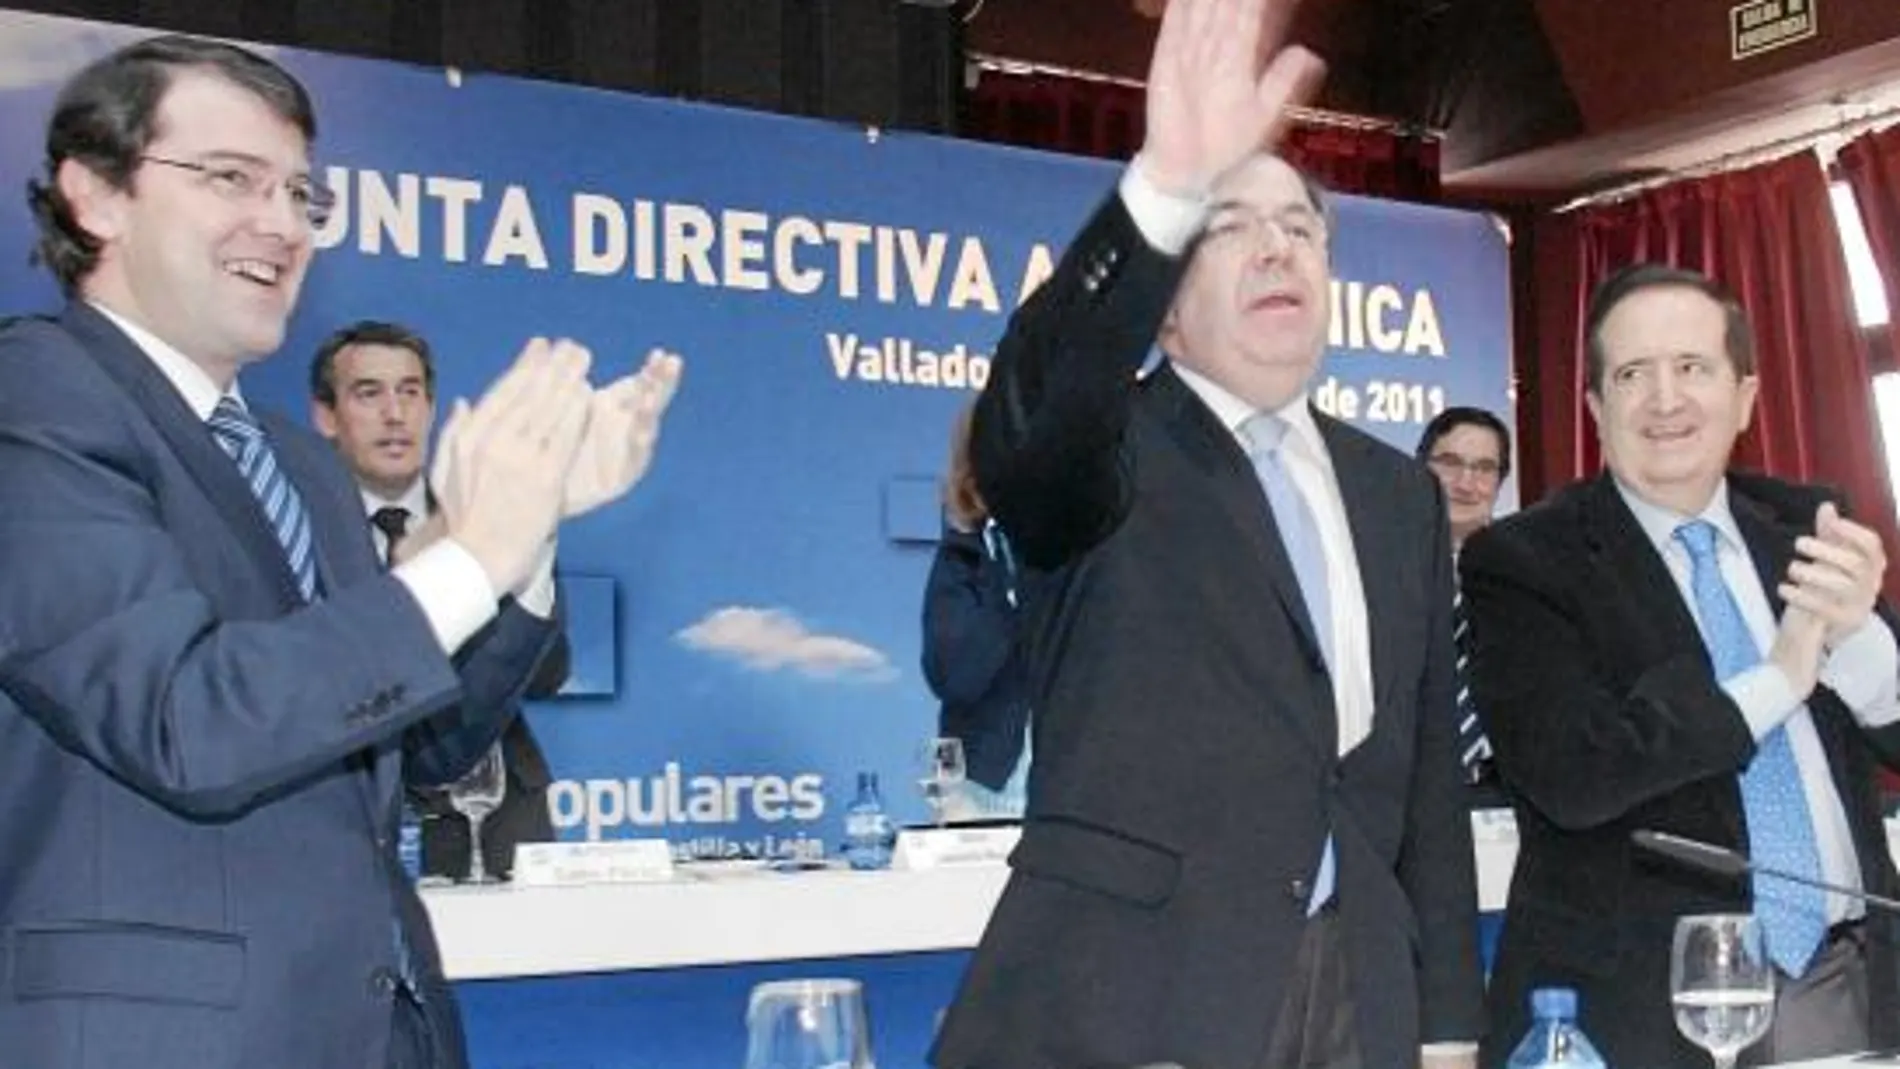 Arriba, Herrera junto al vicepresidente del Senado, Juan José Lucas, el secretario regional del PP, Alfonso Fernández Mañueco y el presidente del PP de Ávila, Antolín Sanz.